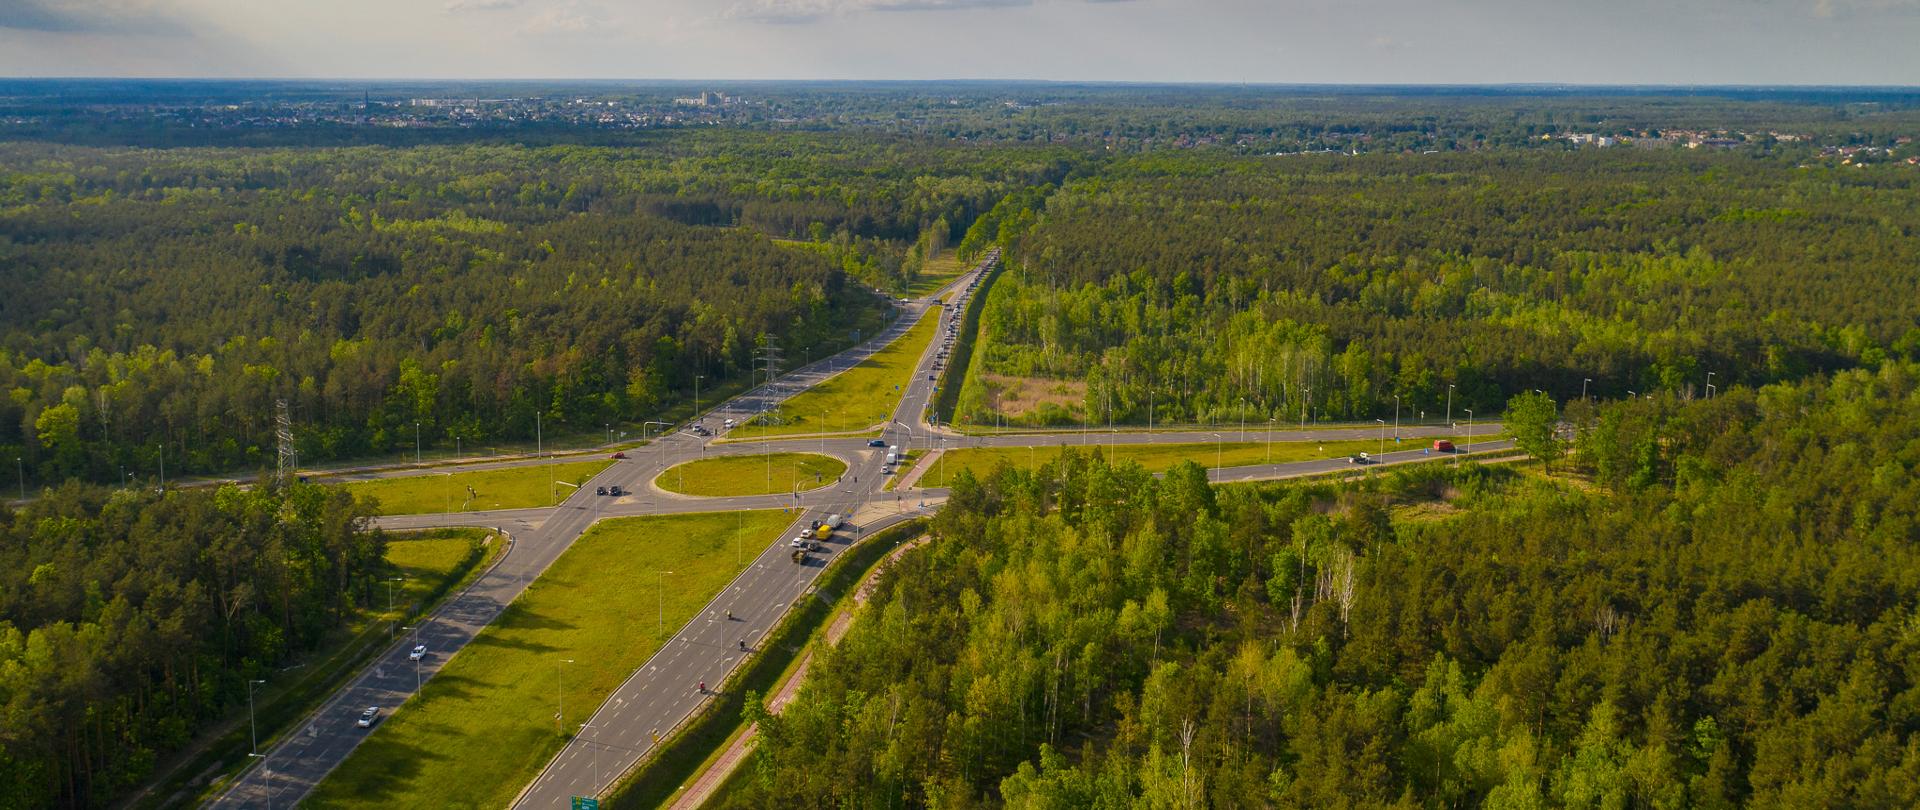 Widok z powietrza na położone w obszarze leśnym skrzyżowanie dróg wojewódzkich 631 i 634 pomiędzy podwarszawskimi Ząbkami i Zielonką. To jedne z najbardziej obciążonych ruchem odcinków dróg wojewódzkich w Polsce. 